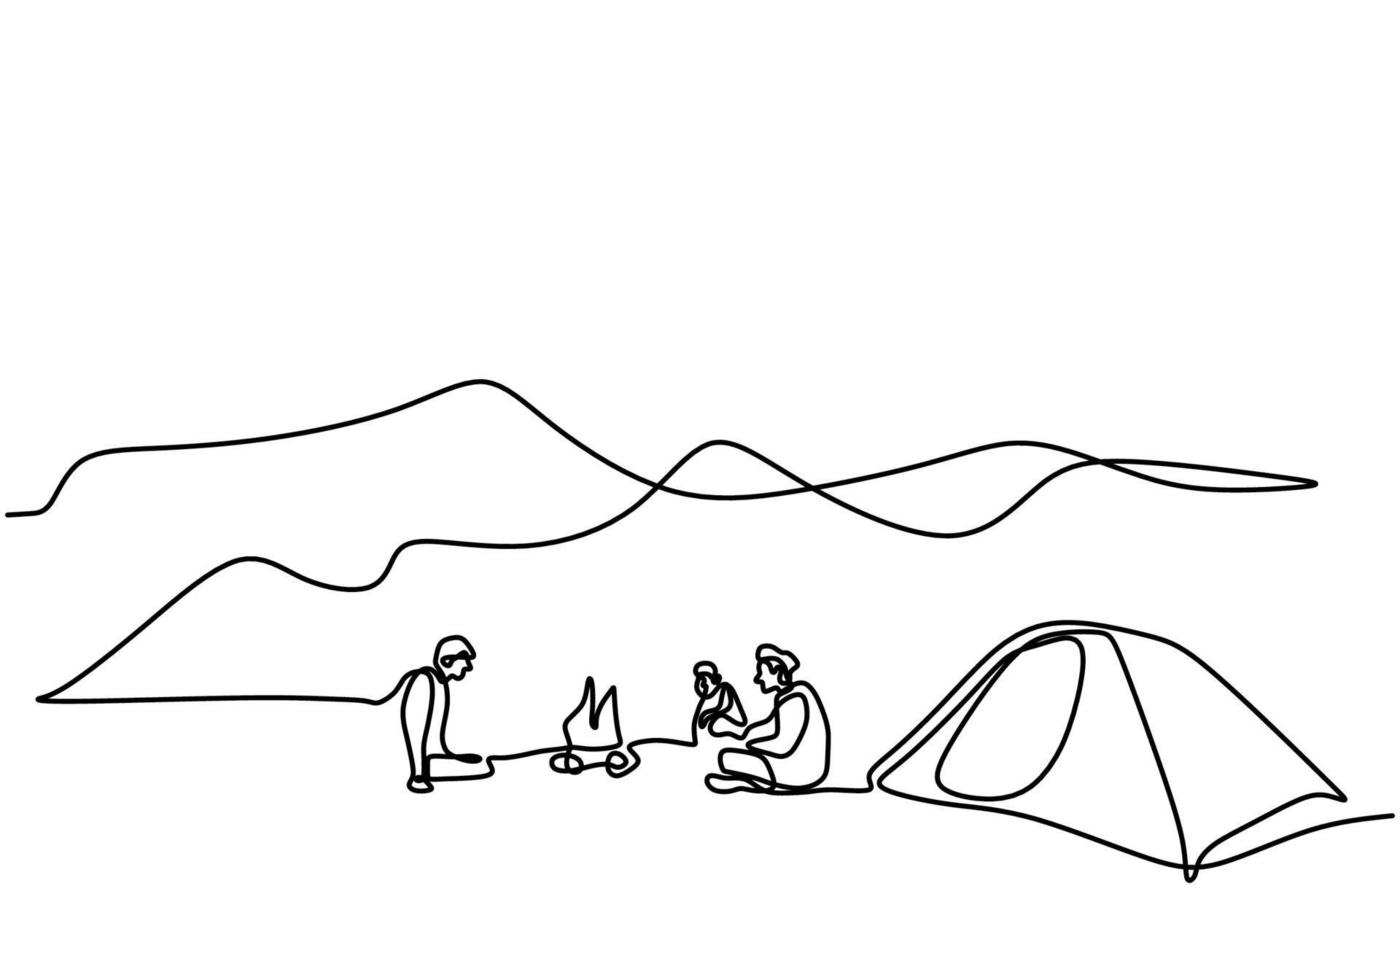 una línea dibujando personas acampando. joven disfruta de actividades al aire libre con carpas y fogatas. exploración y acampada de aventuras. macho emocionado por acampar en las montañas disfrutando de la naturaleza vector